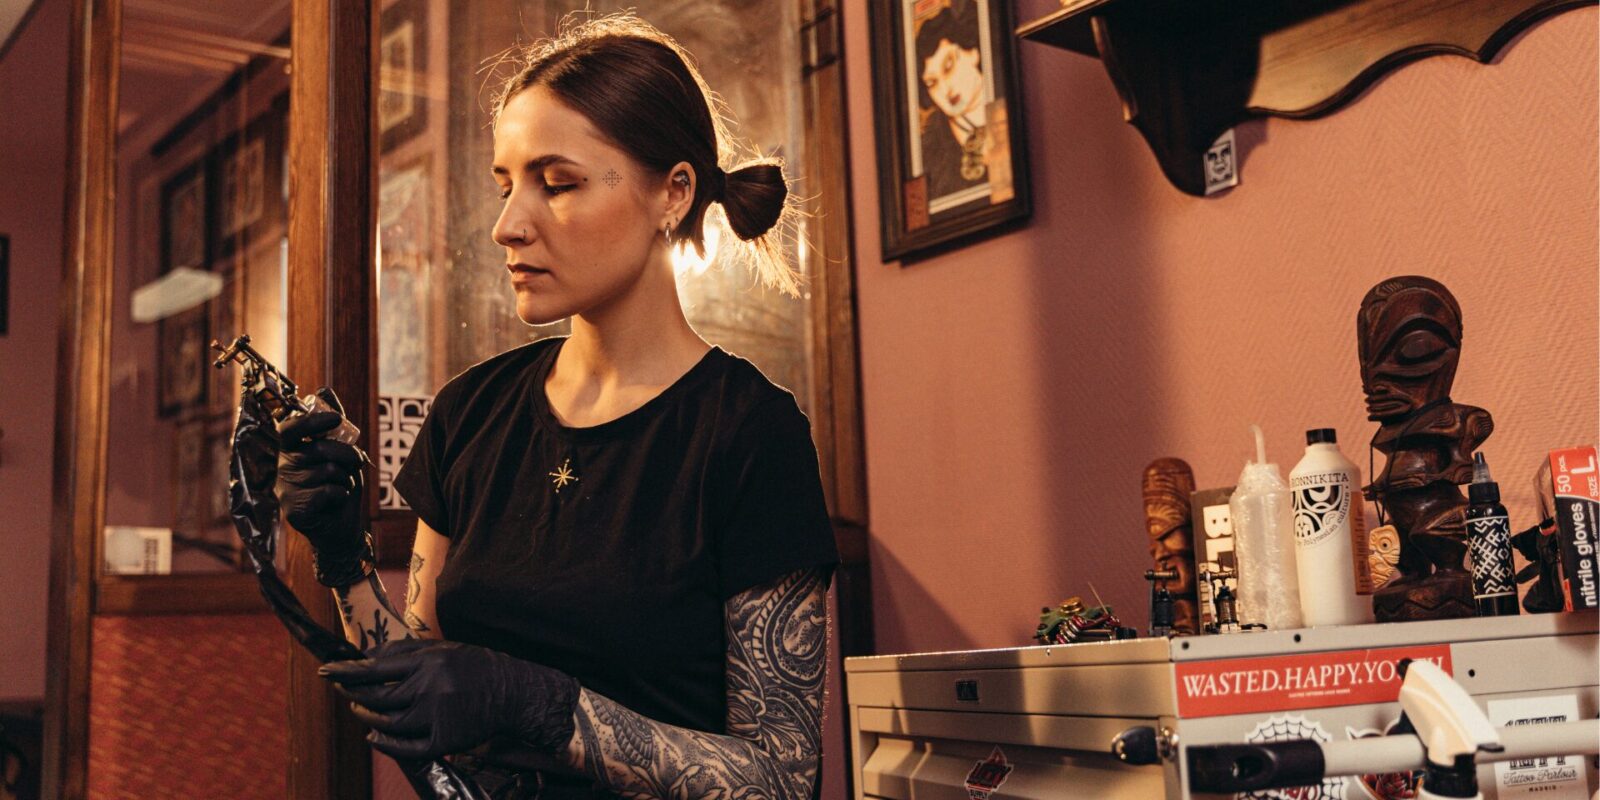 Tätowierer Ausbildung: So kannst du Tattoo Artist werden